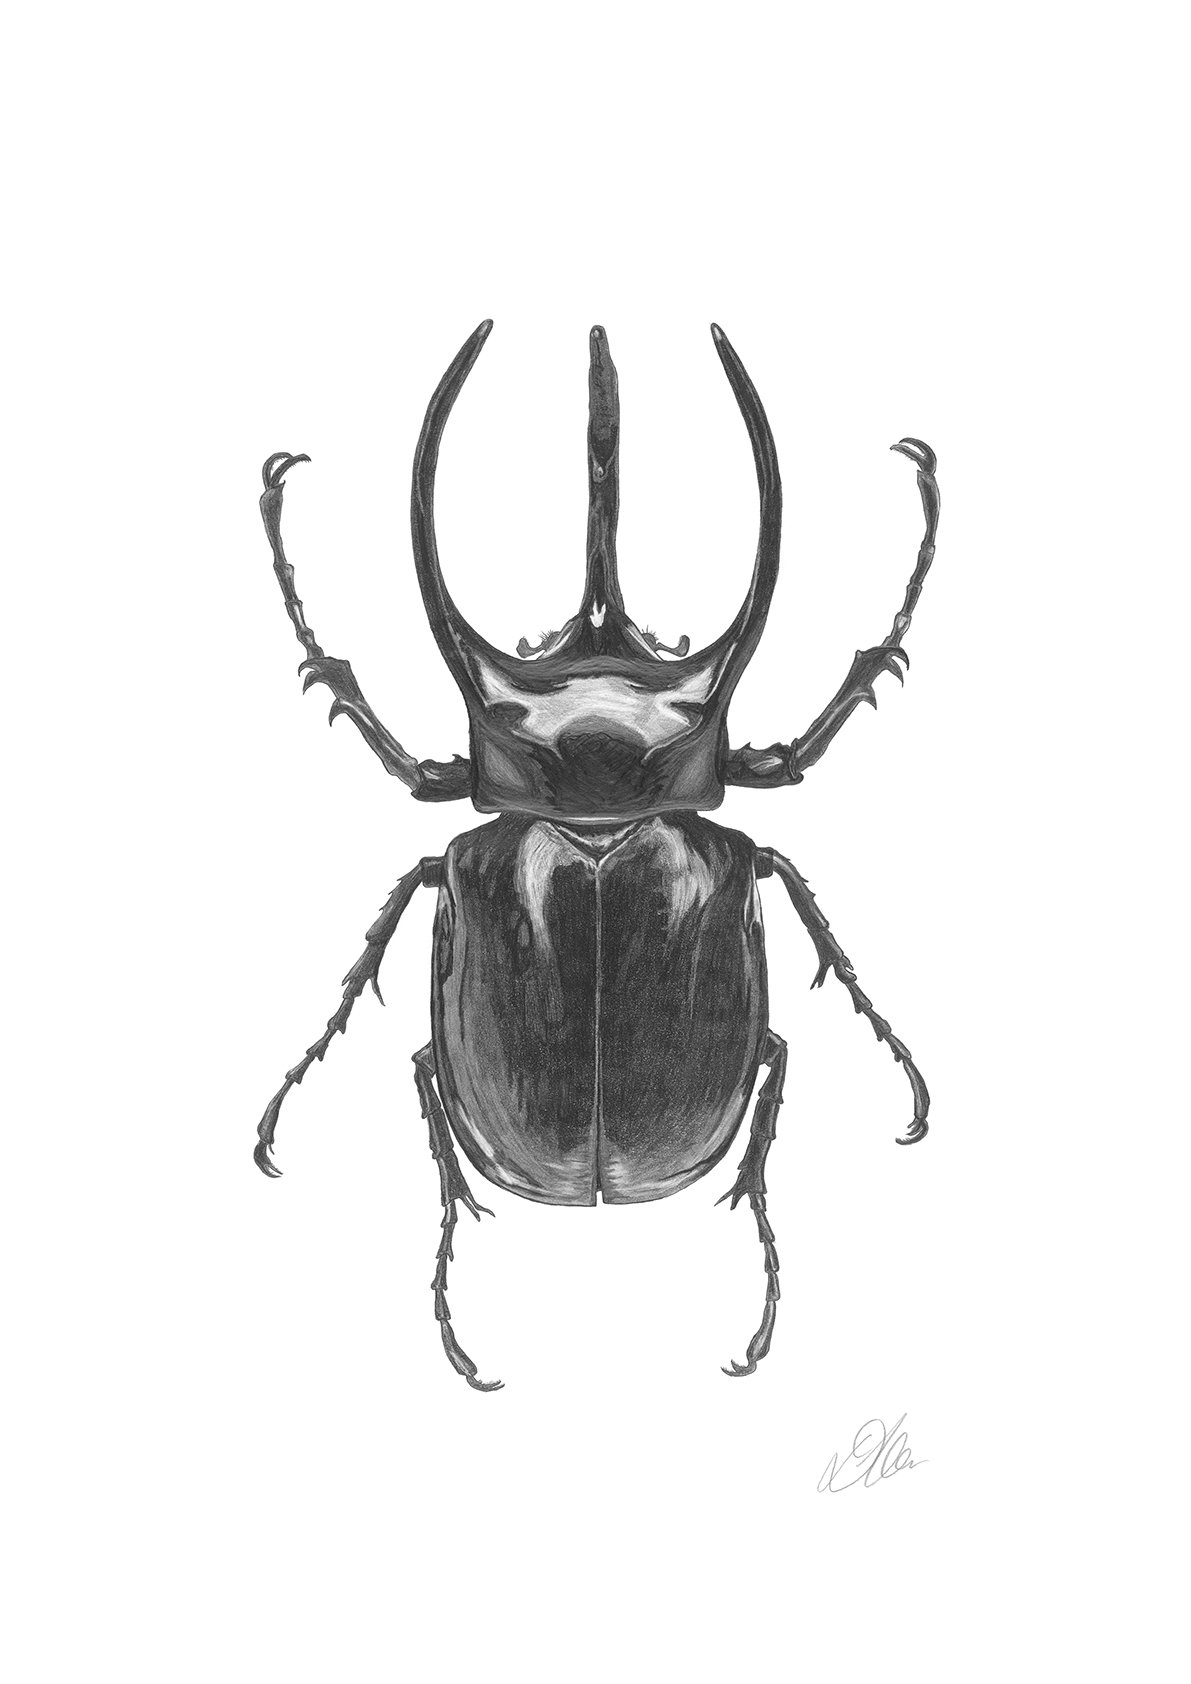 Longhorn Beetle | Pencil Drawing by Debbie New